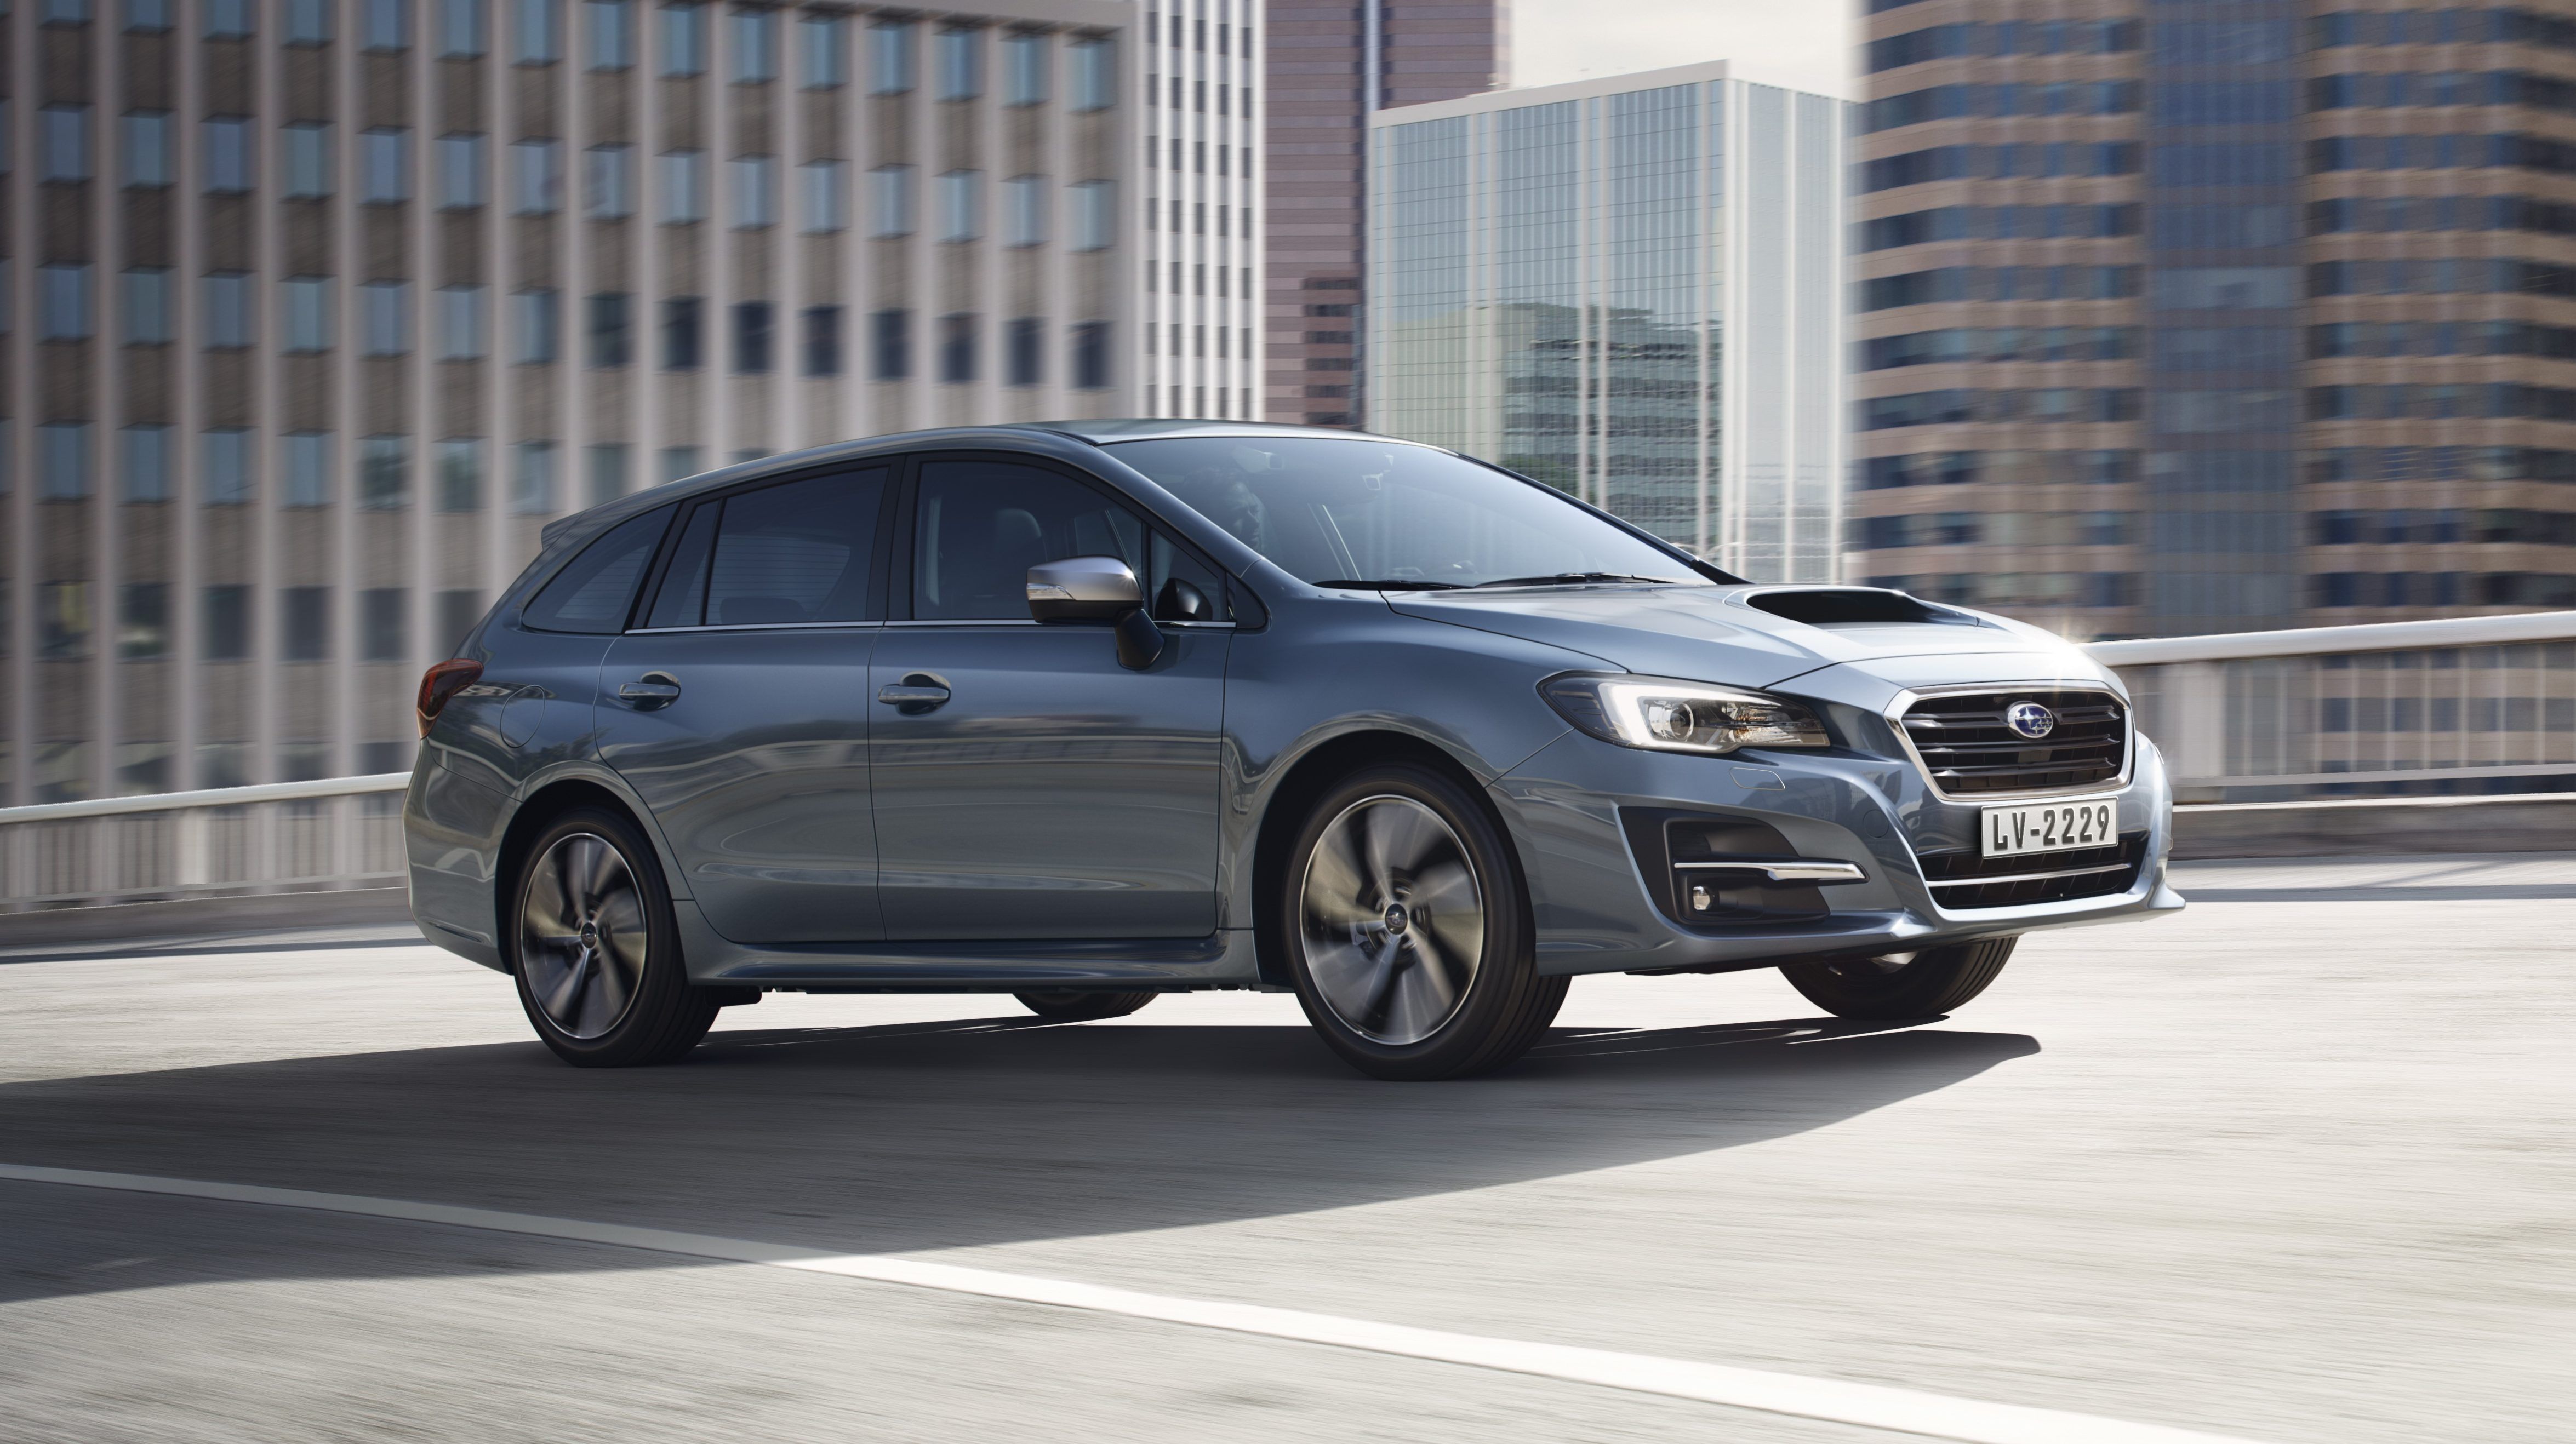 Subaru PH Brings in More Powerful 2.0-Liter Subaru Levorg